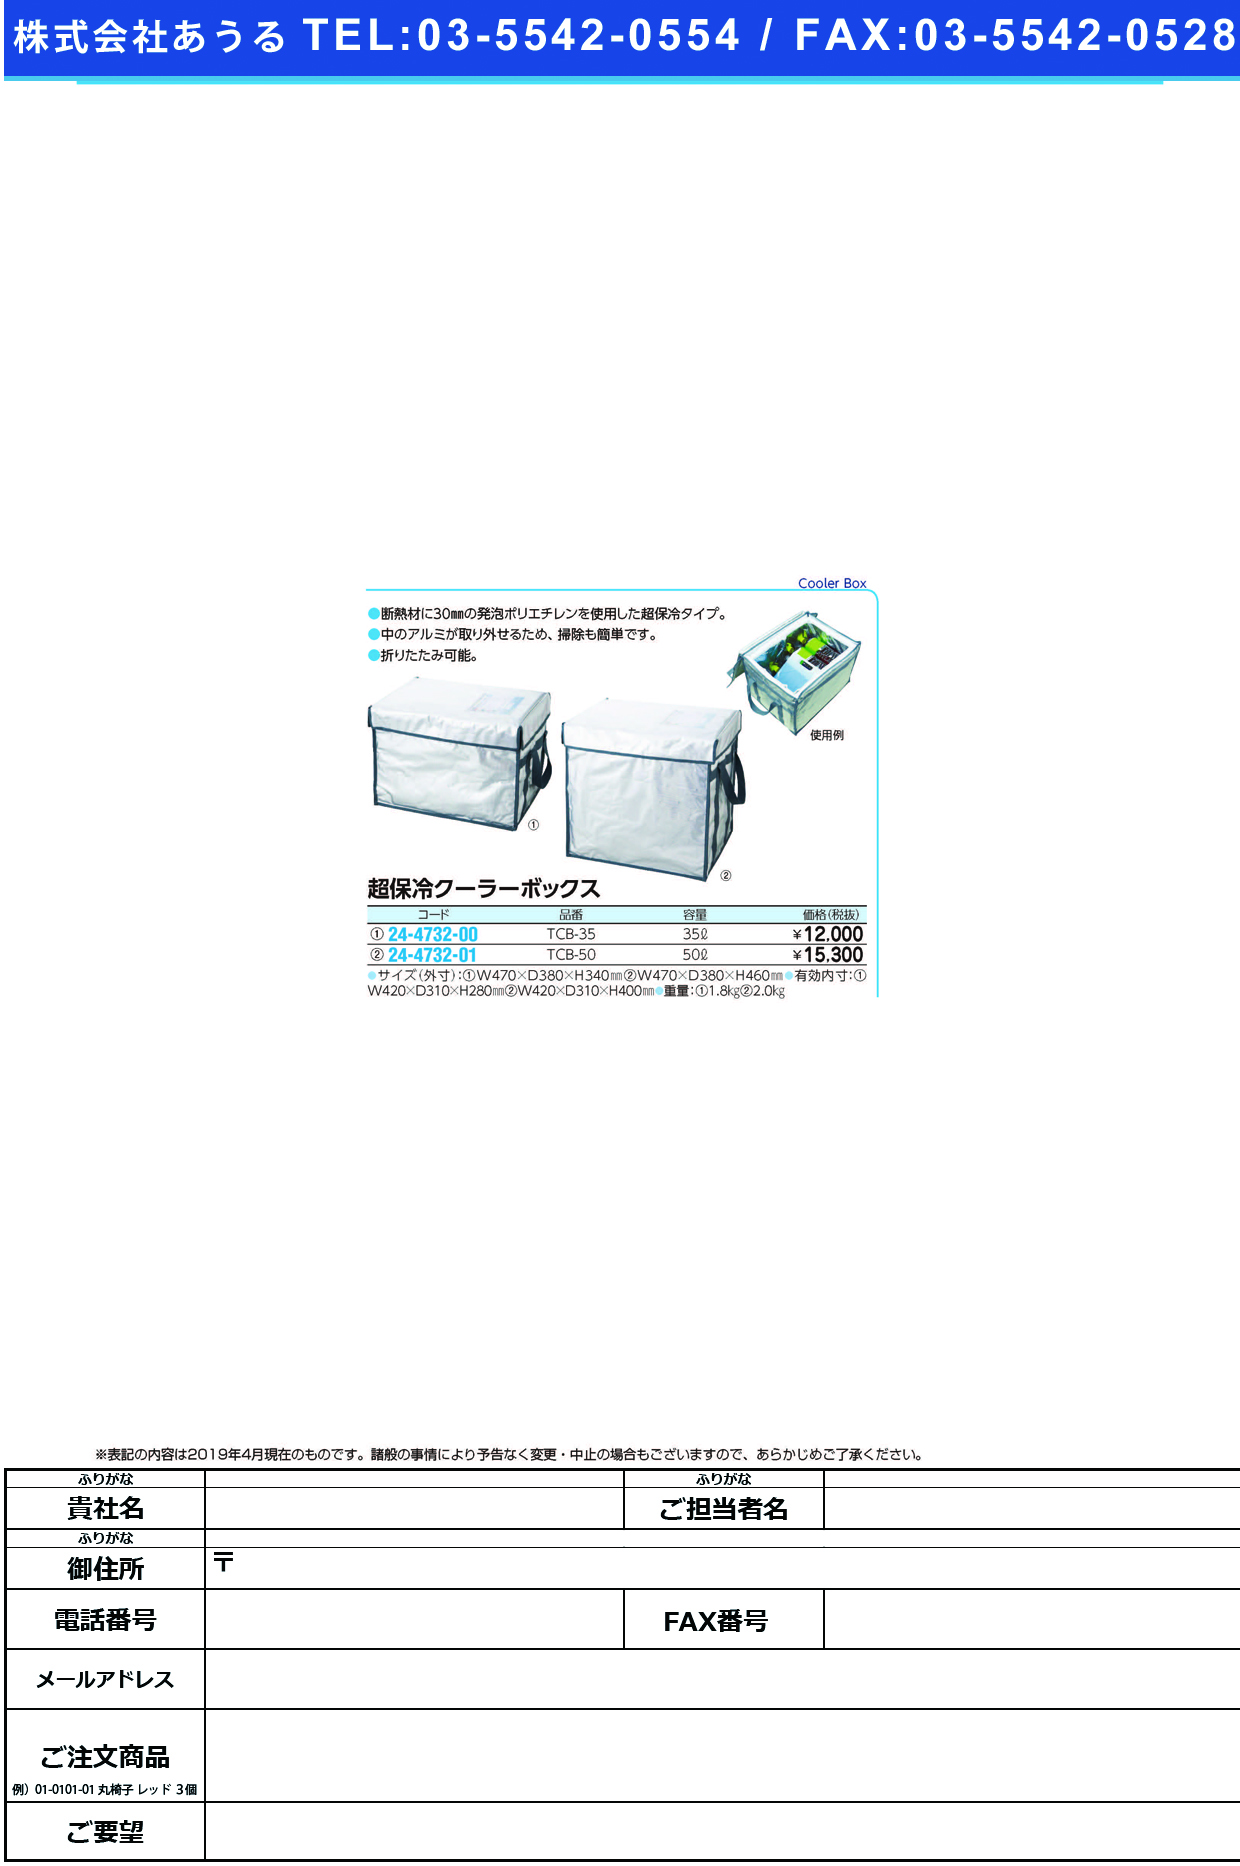 (24-4732-00)超保冷クーラーボックス TCB-35(35L) ﾁｮｳﾎﾚｲｸｰﾗｰﾎﾞｯｸｽ【1個単位】【2019年カタログ商品】